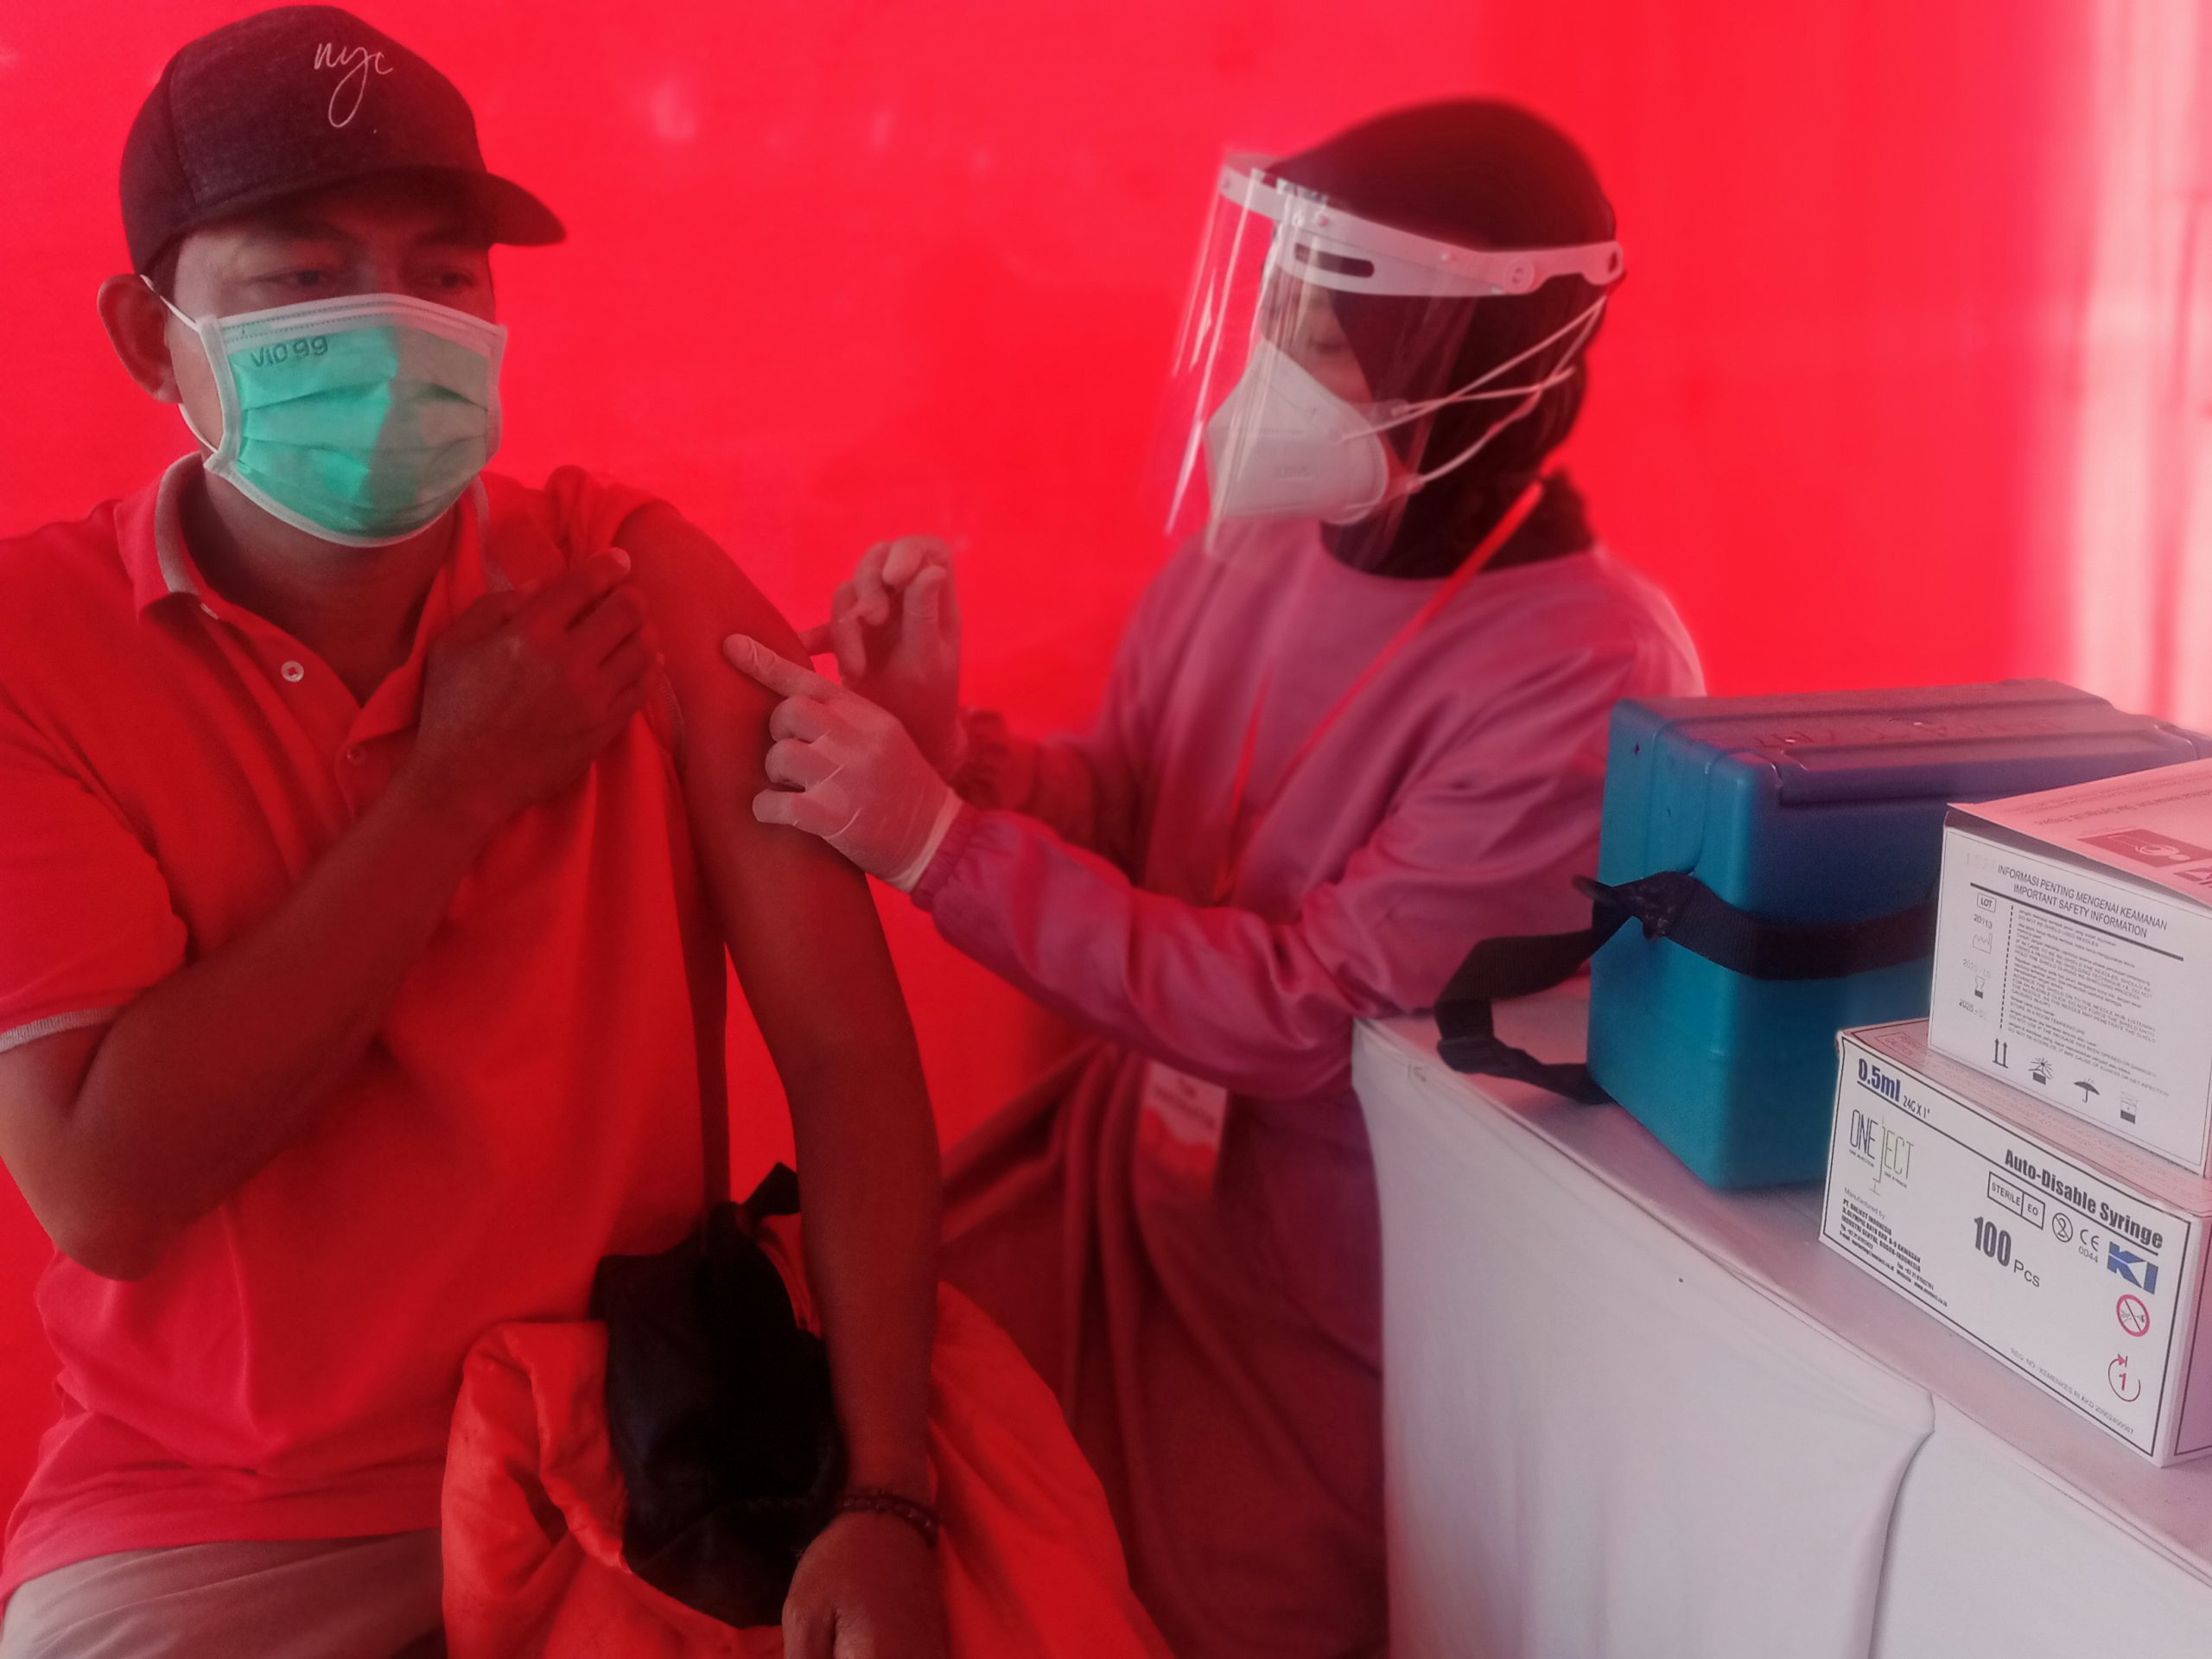 Pemkab Malang Gelar Serbuan Vaksinasi Hingga ke Puskesmas Setiap Kecamatan